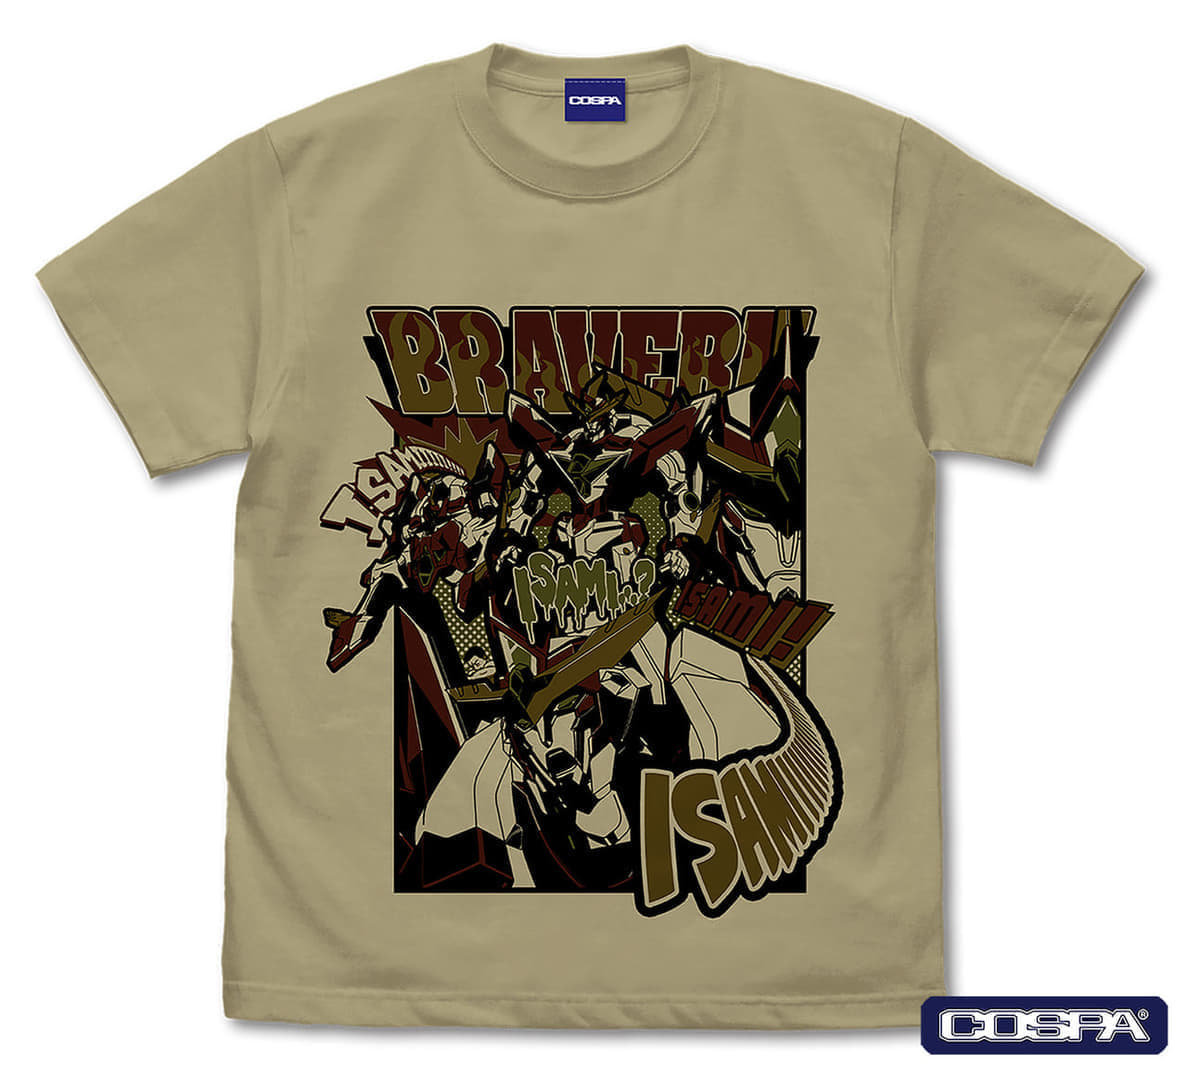 『勇気爆発バーンブレイバーン』の「イサミィーーッ！Tシャツ」が販売決定_003